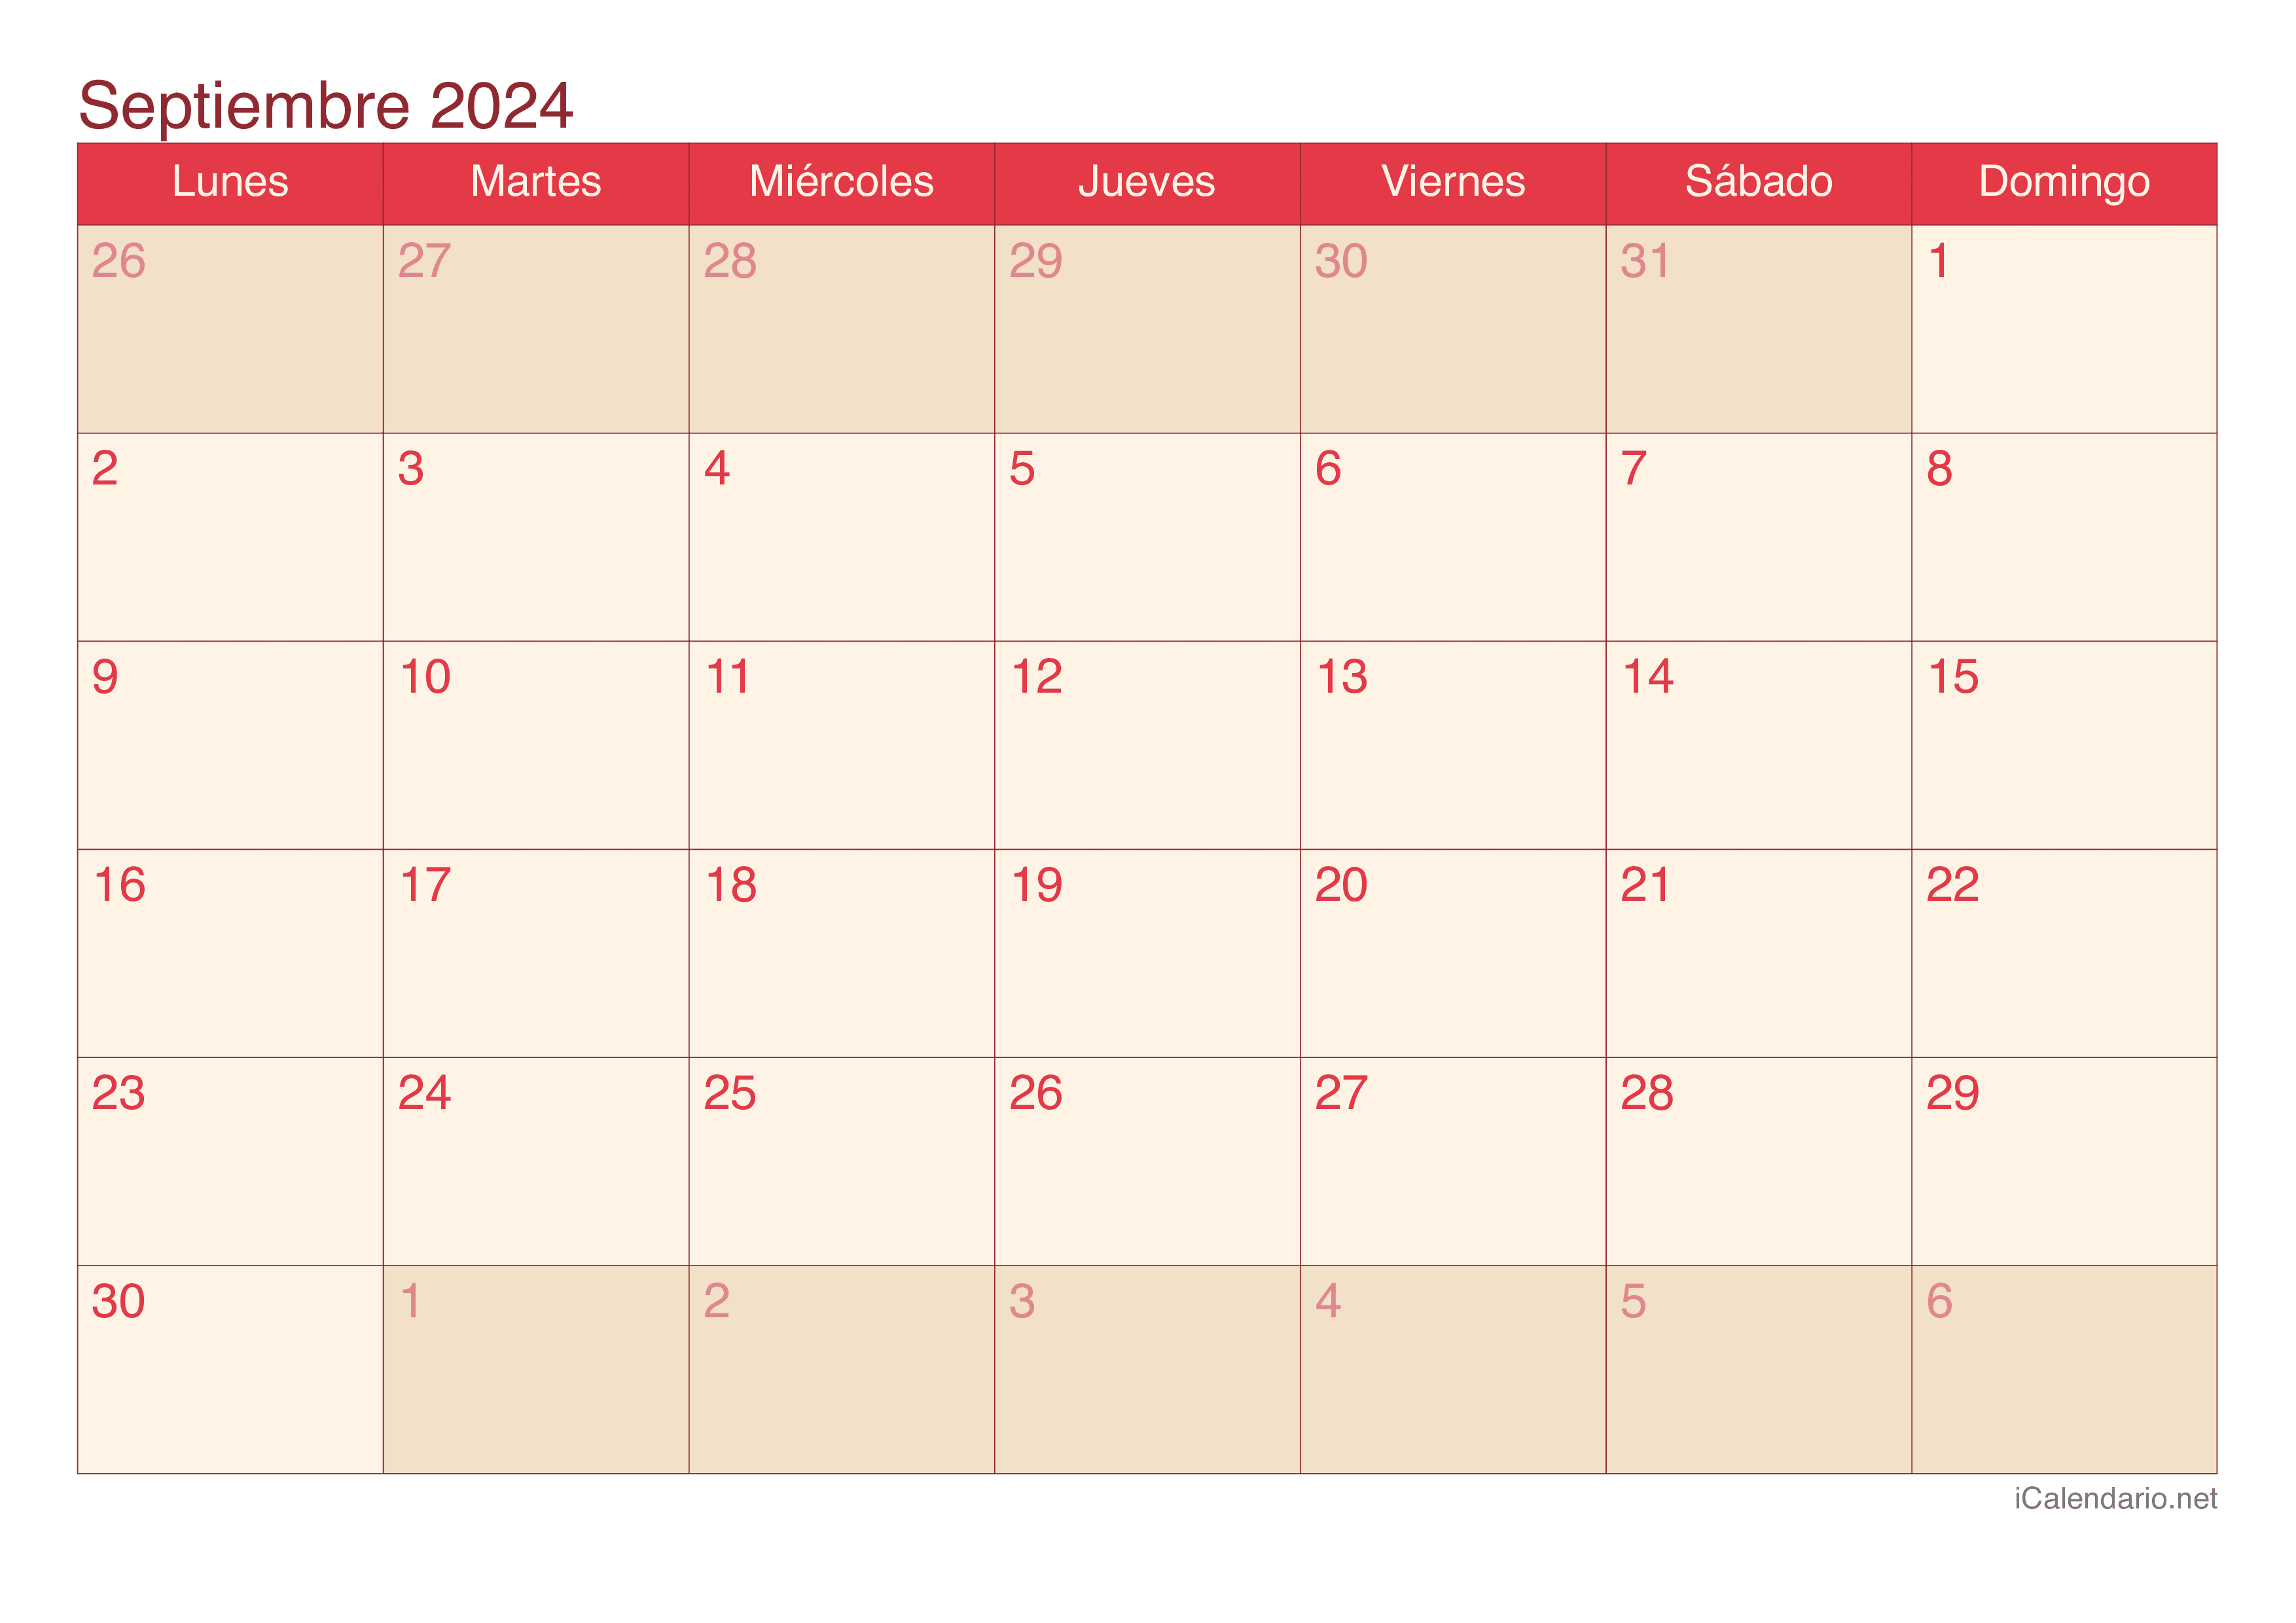 Calendario de septiembre 2024 - Cherry